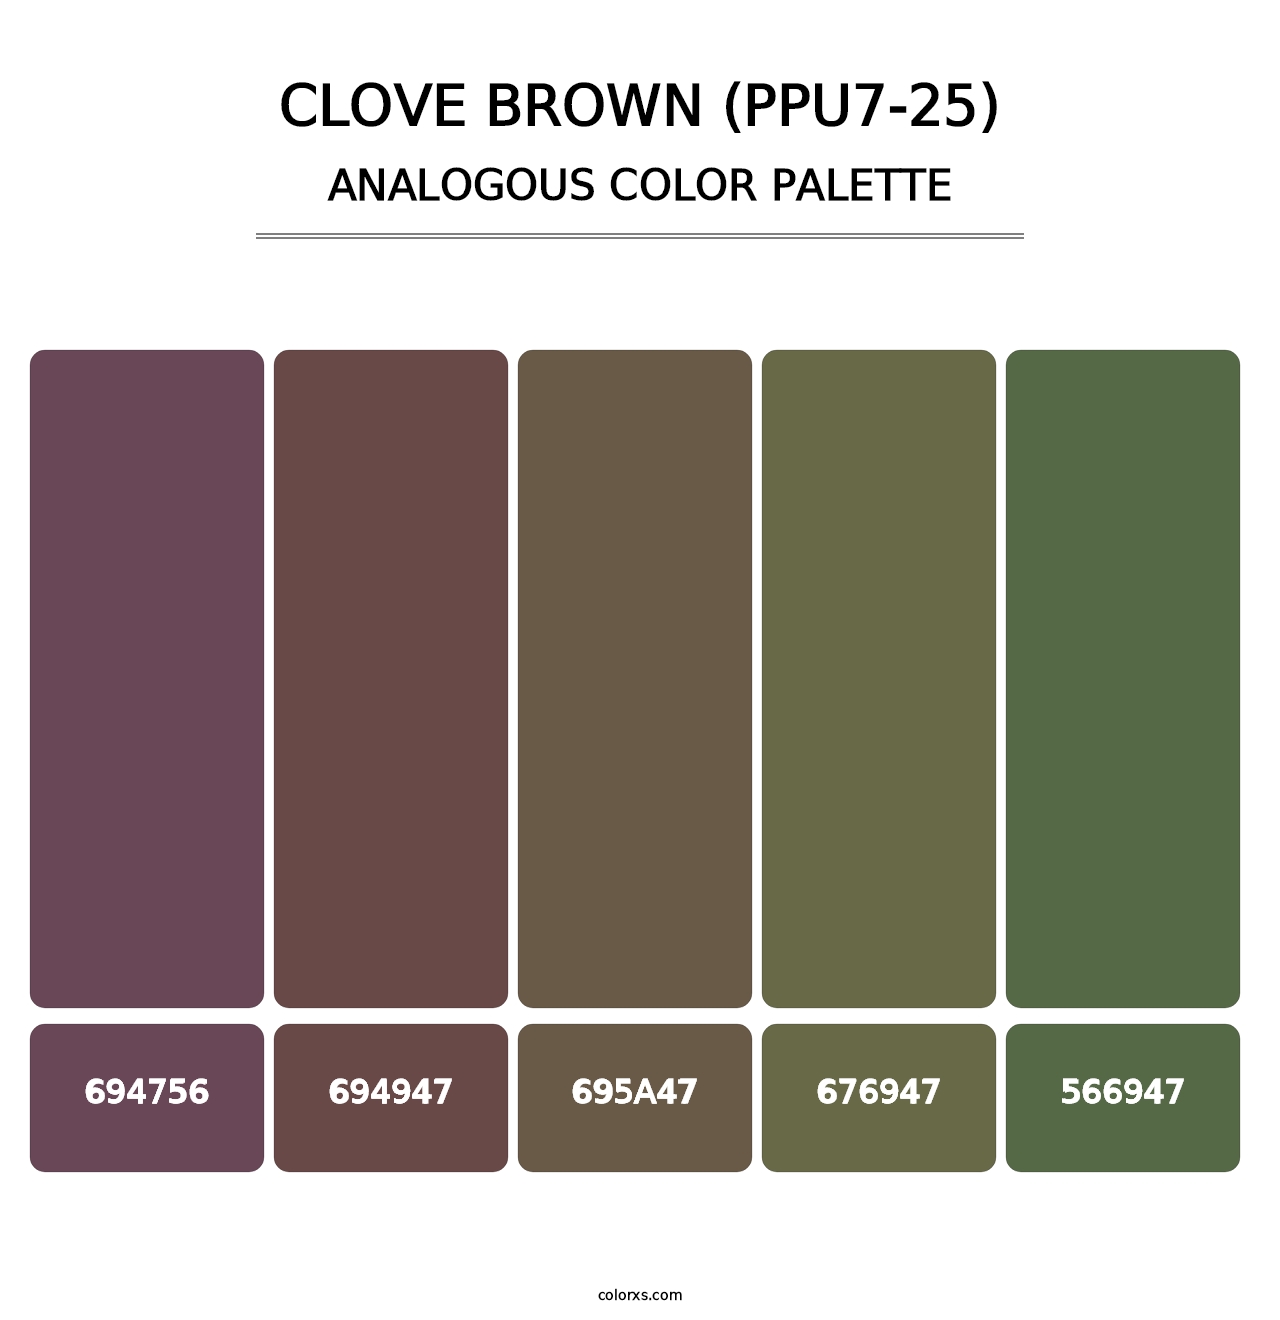 Clove Brown (PPU7-25) - Analogous Color Palette